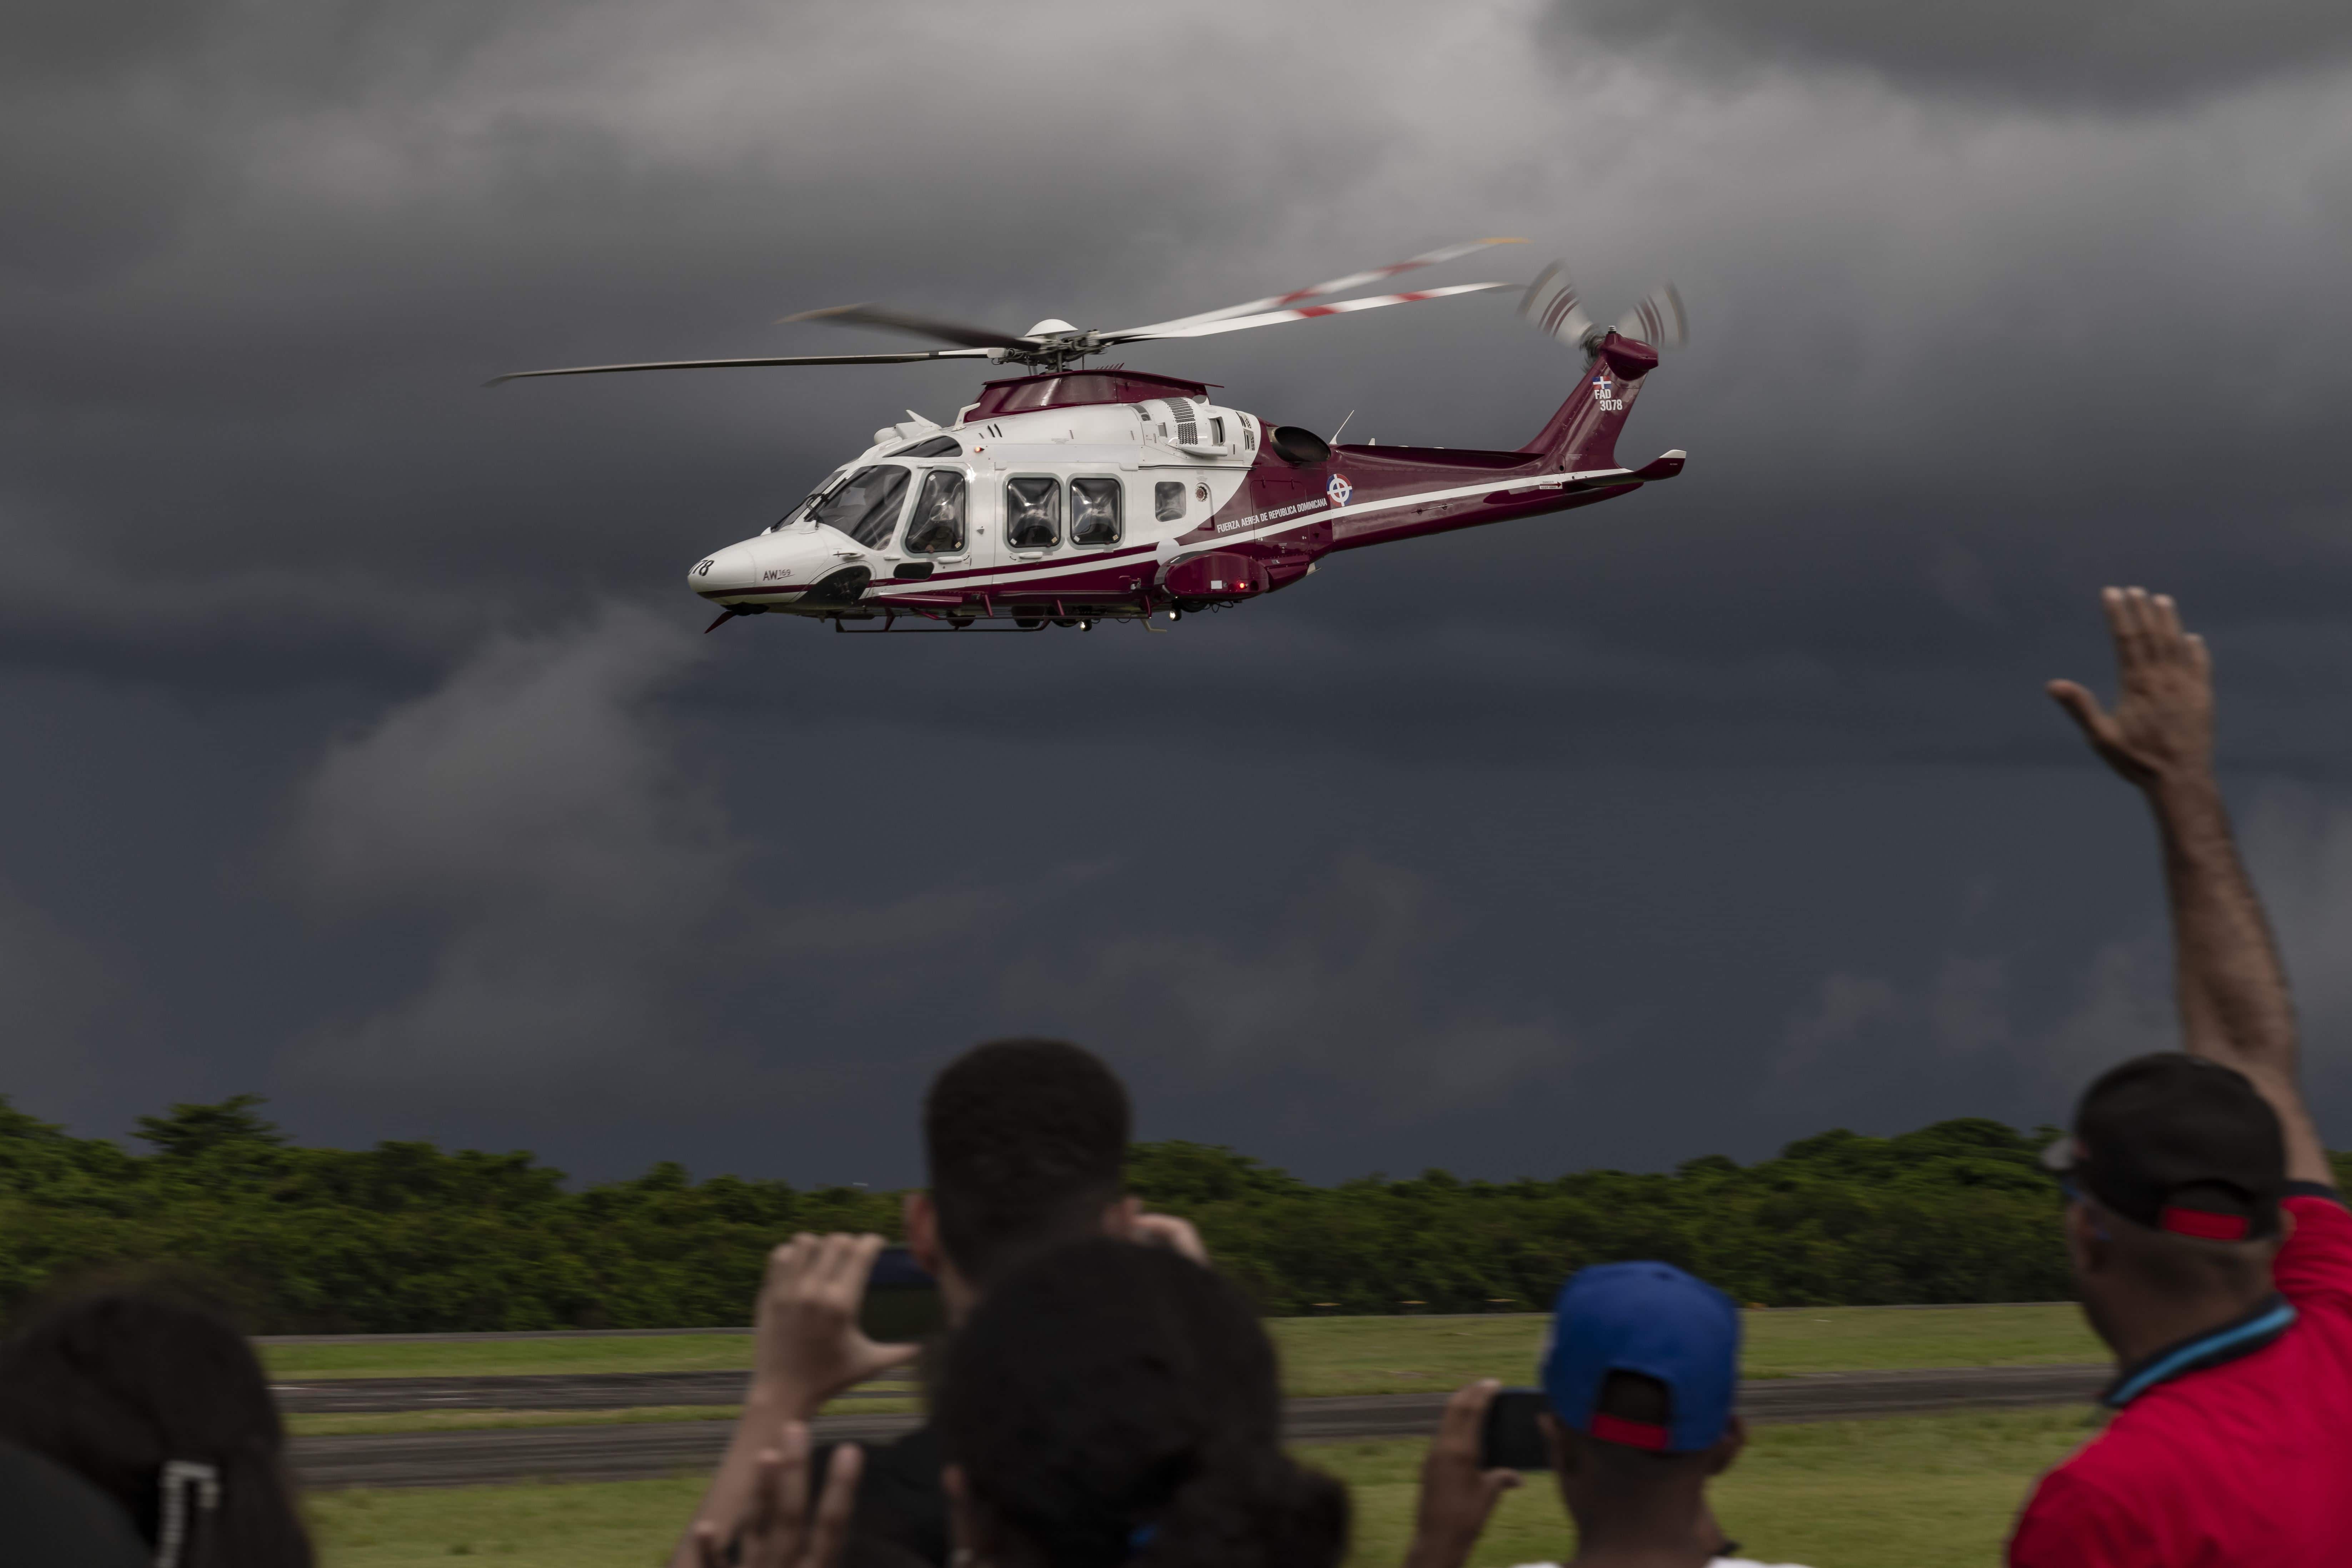 La Vedette del Show de parte dominicana fue el recién adquirido helicóptero AW-169 Leonardo, mostrando algunas de sus destrezas y estabilidad en el vuelo a baja altura.